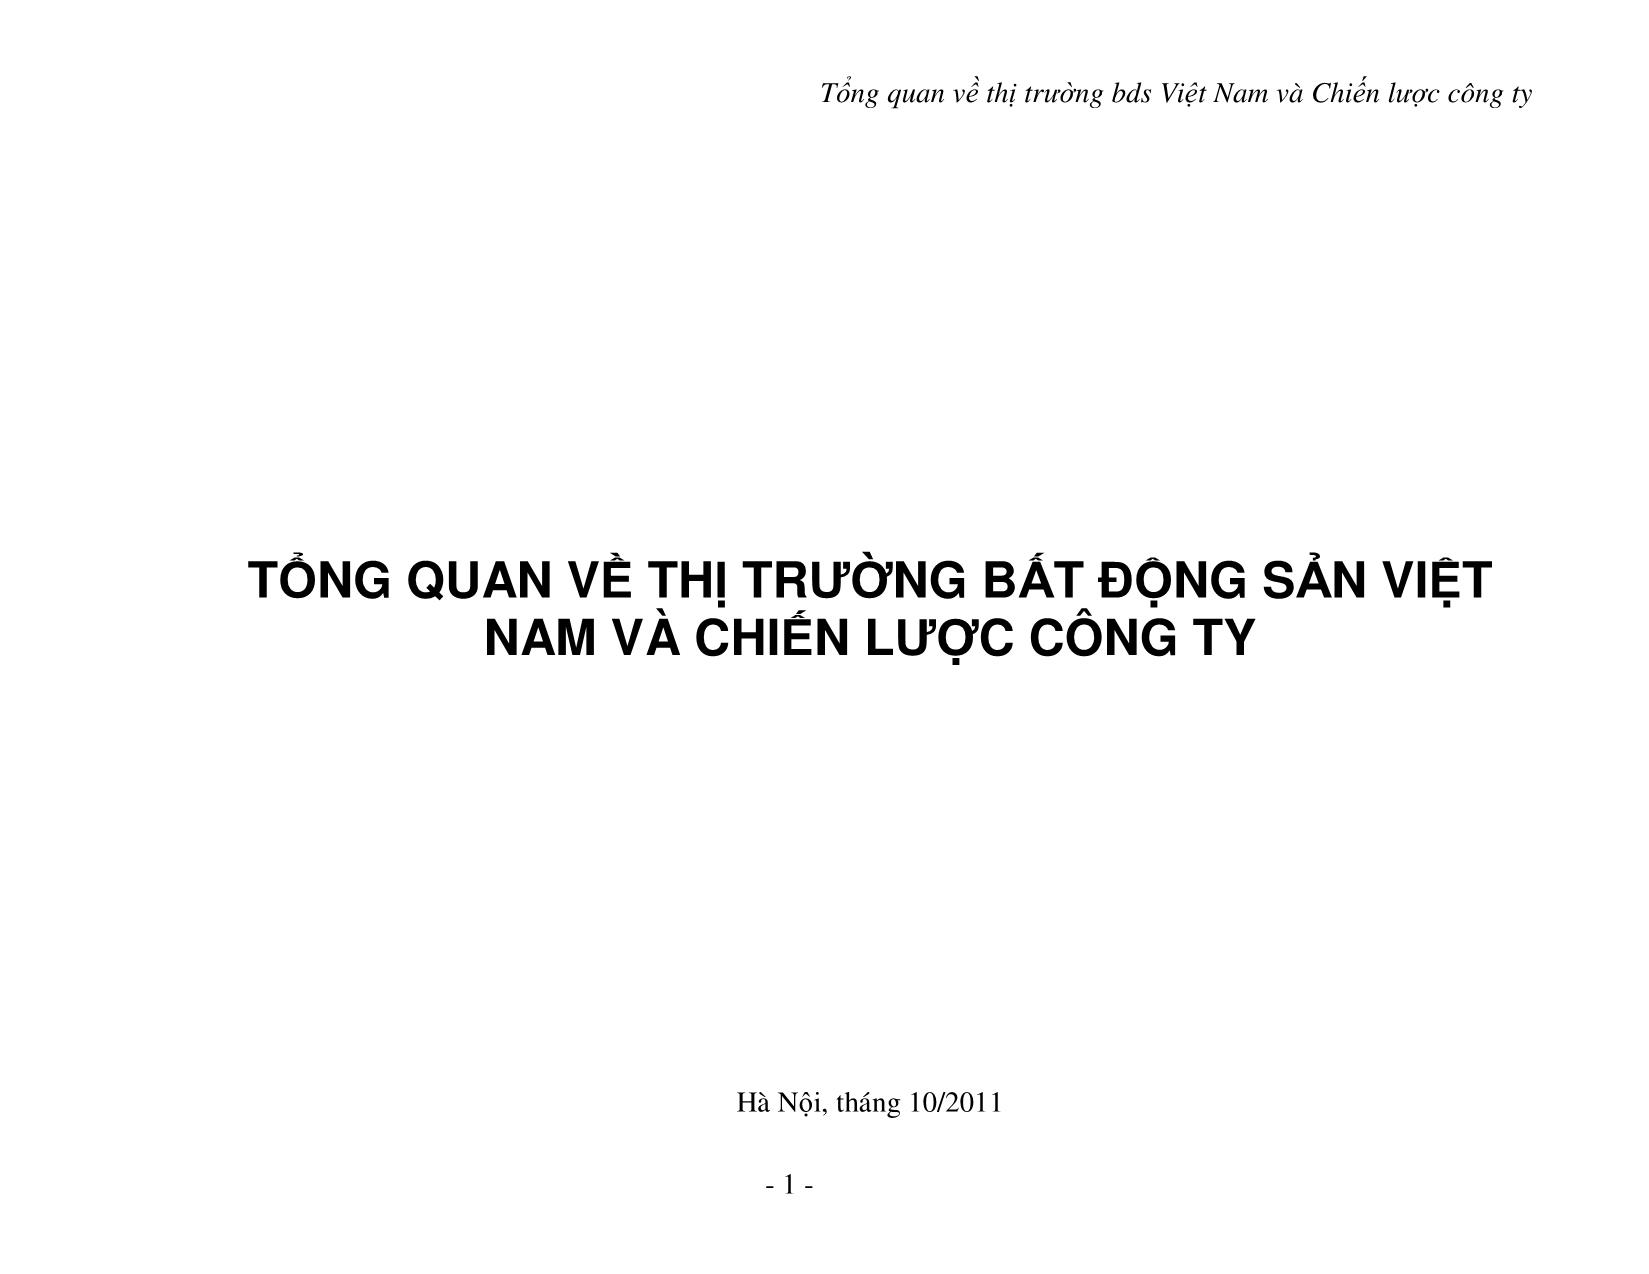 Tài liệu Tổng quan về thị trường bất động sản Việt Nam và chiến lược công ty trang 1